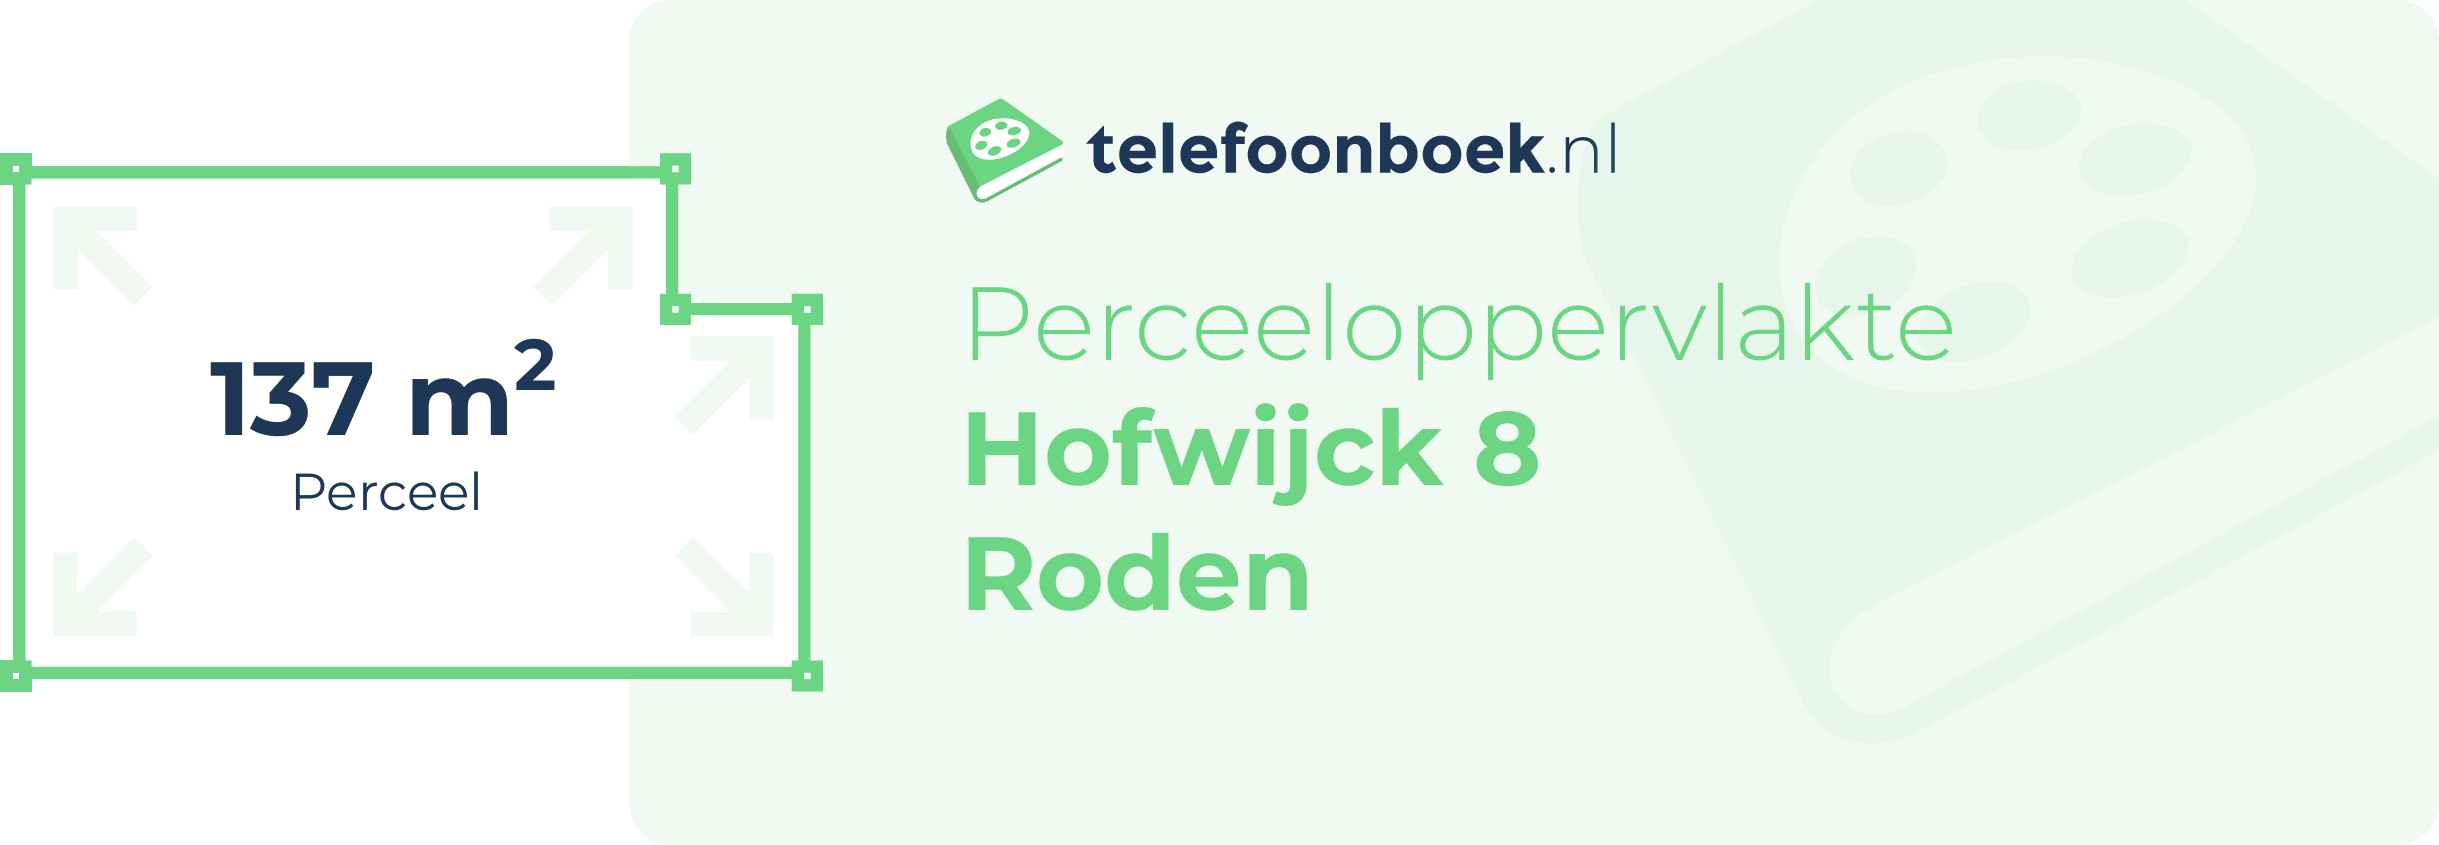 Perceeloppervlakte Hofwijck 8 Roden